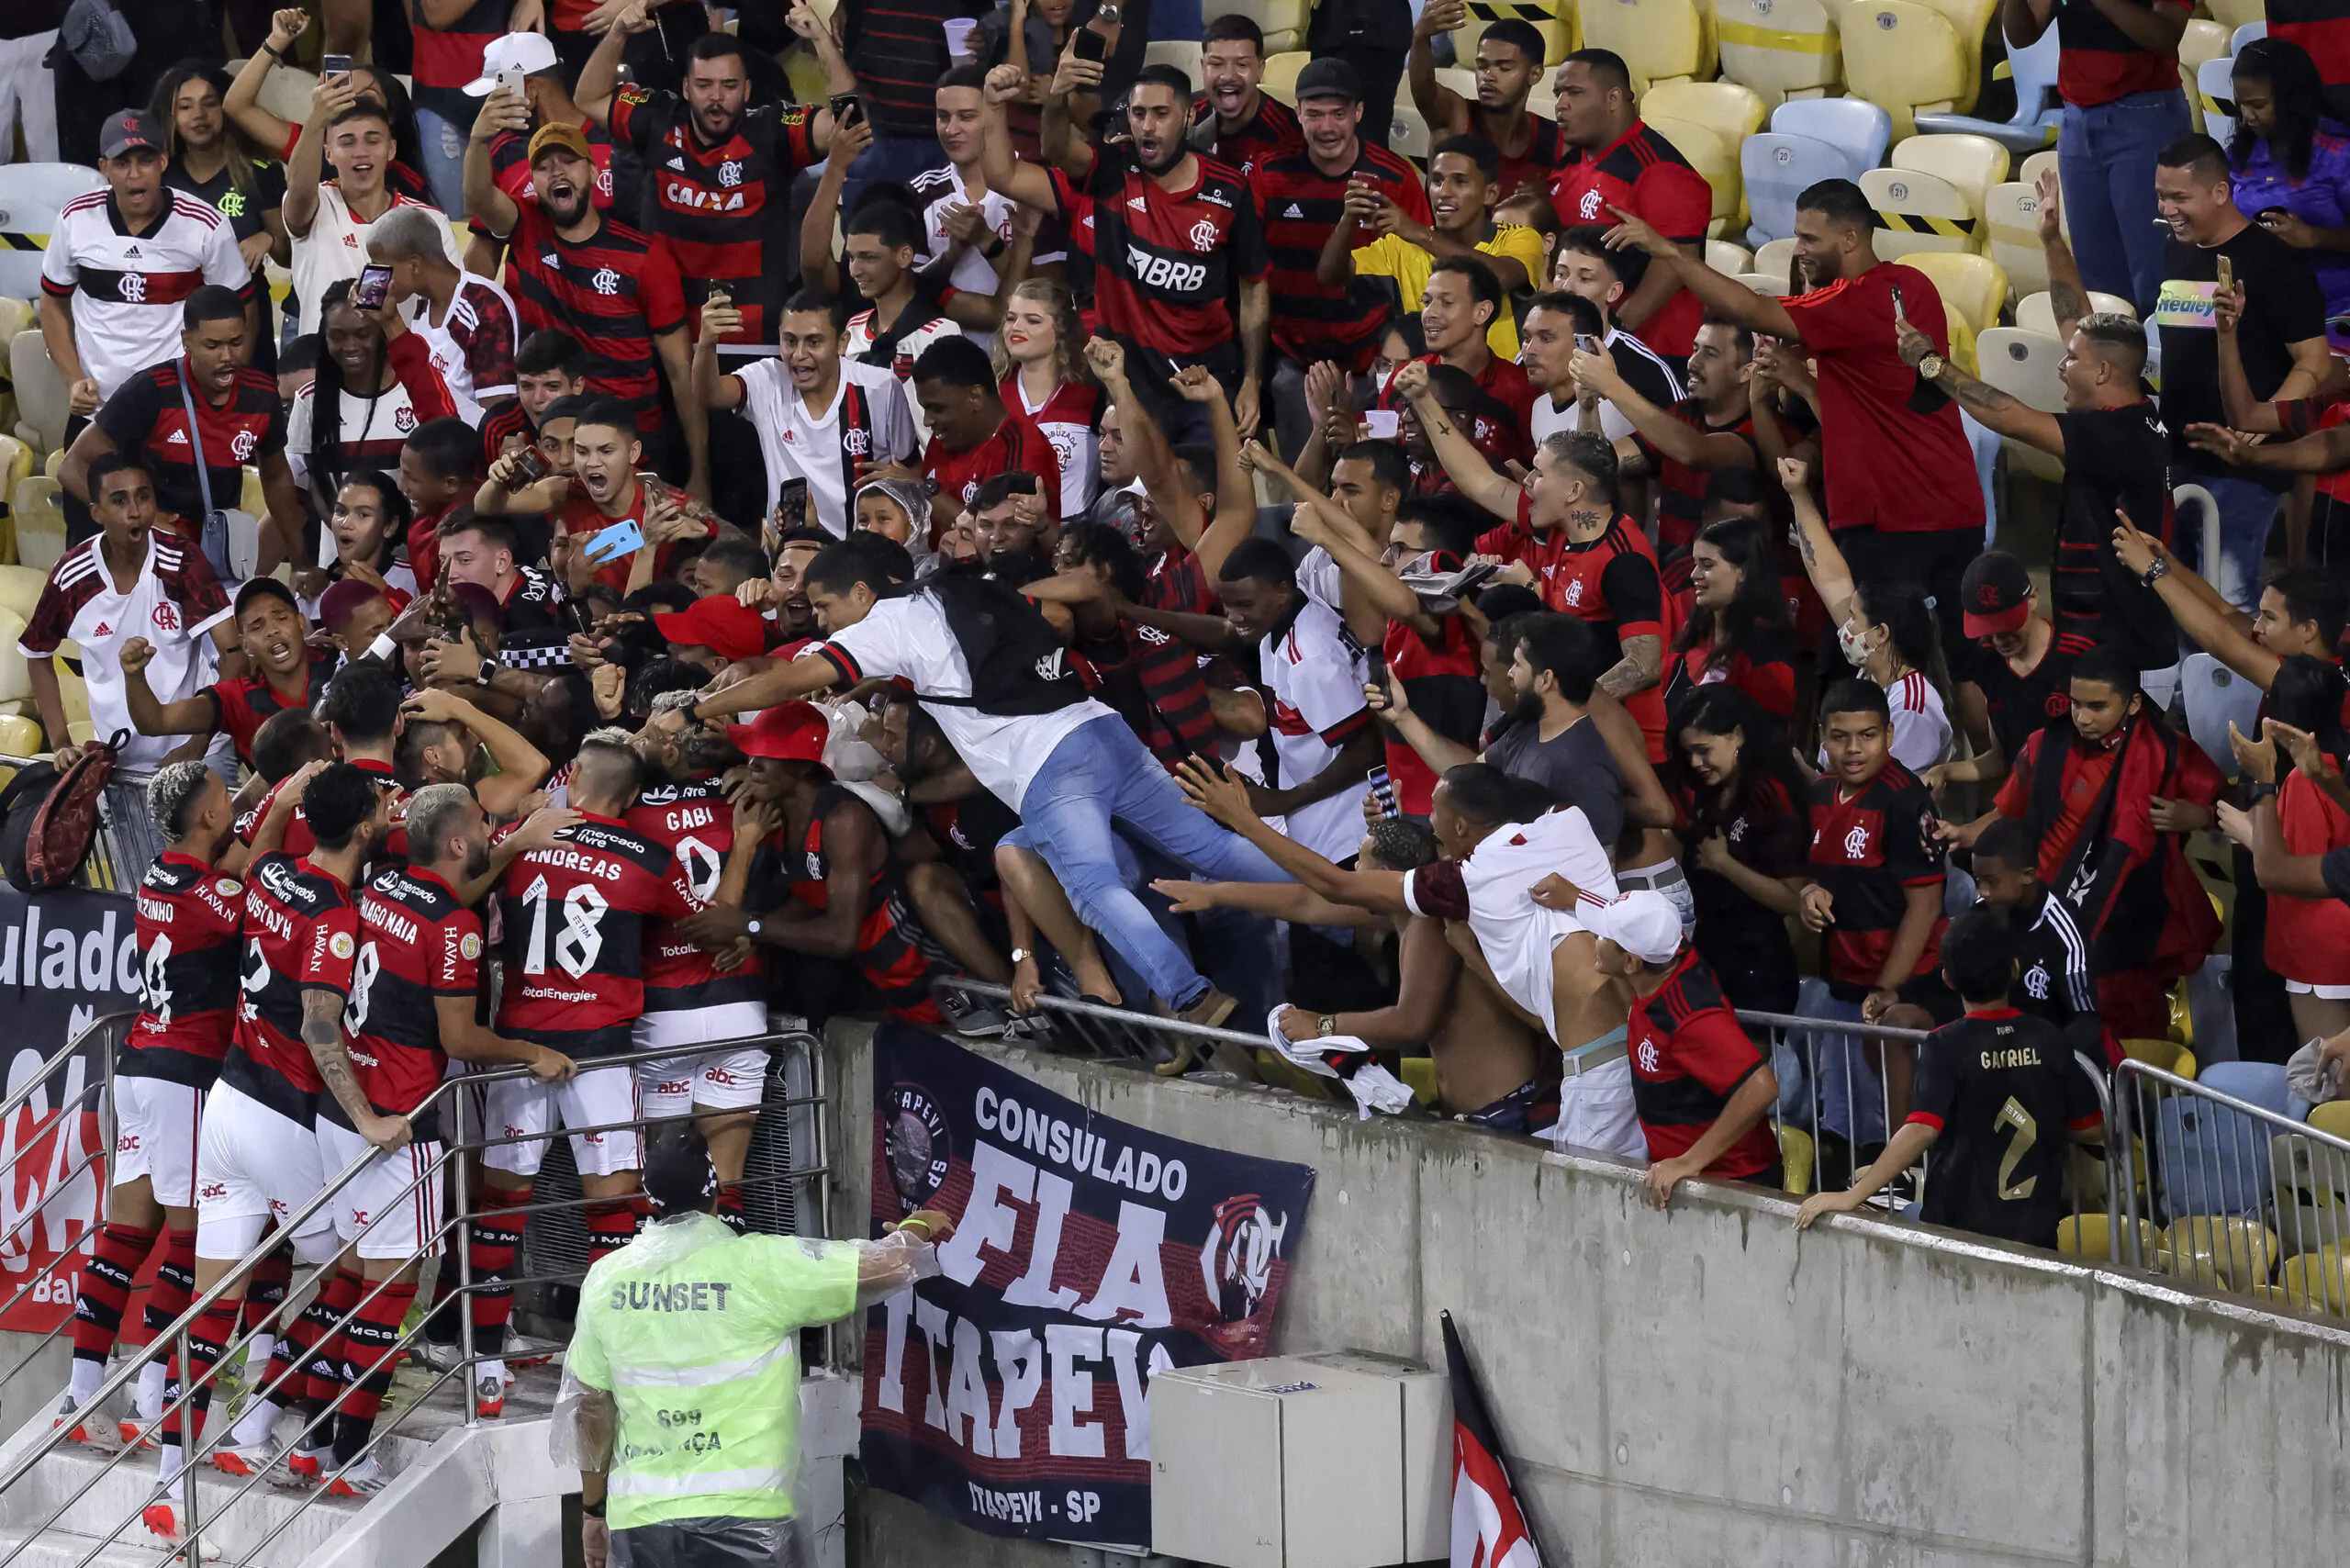 Flamengo, due allenatori ex serie A in lizza per la panchina!